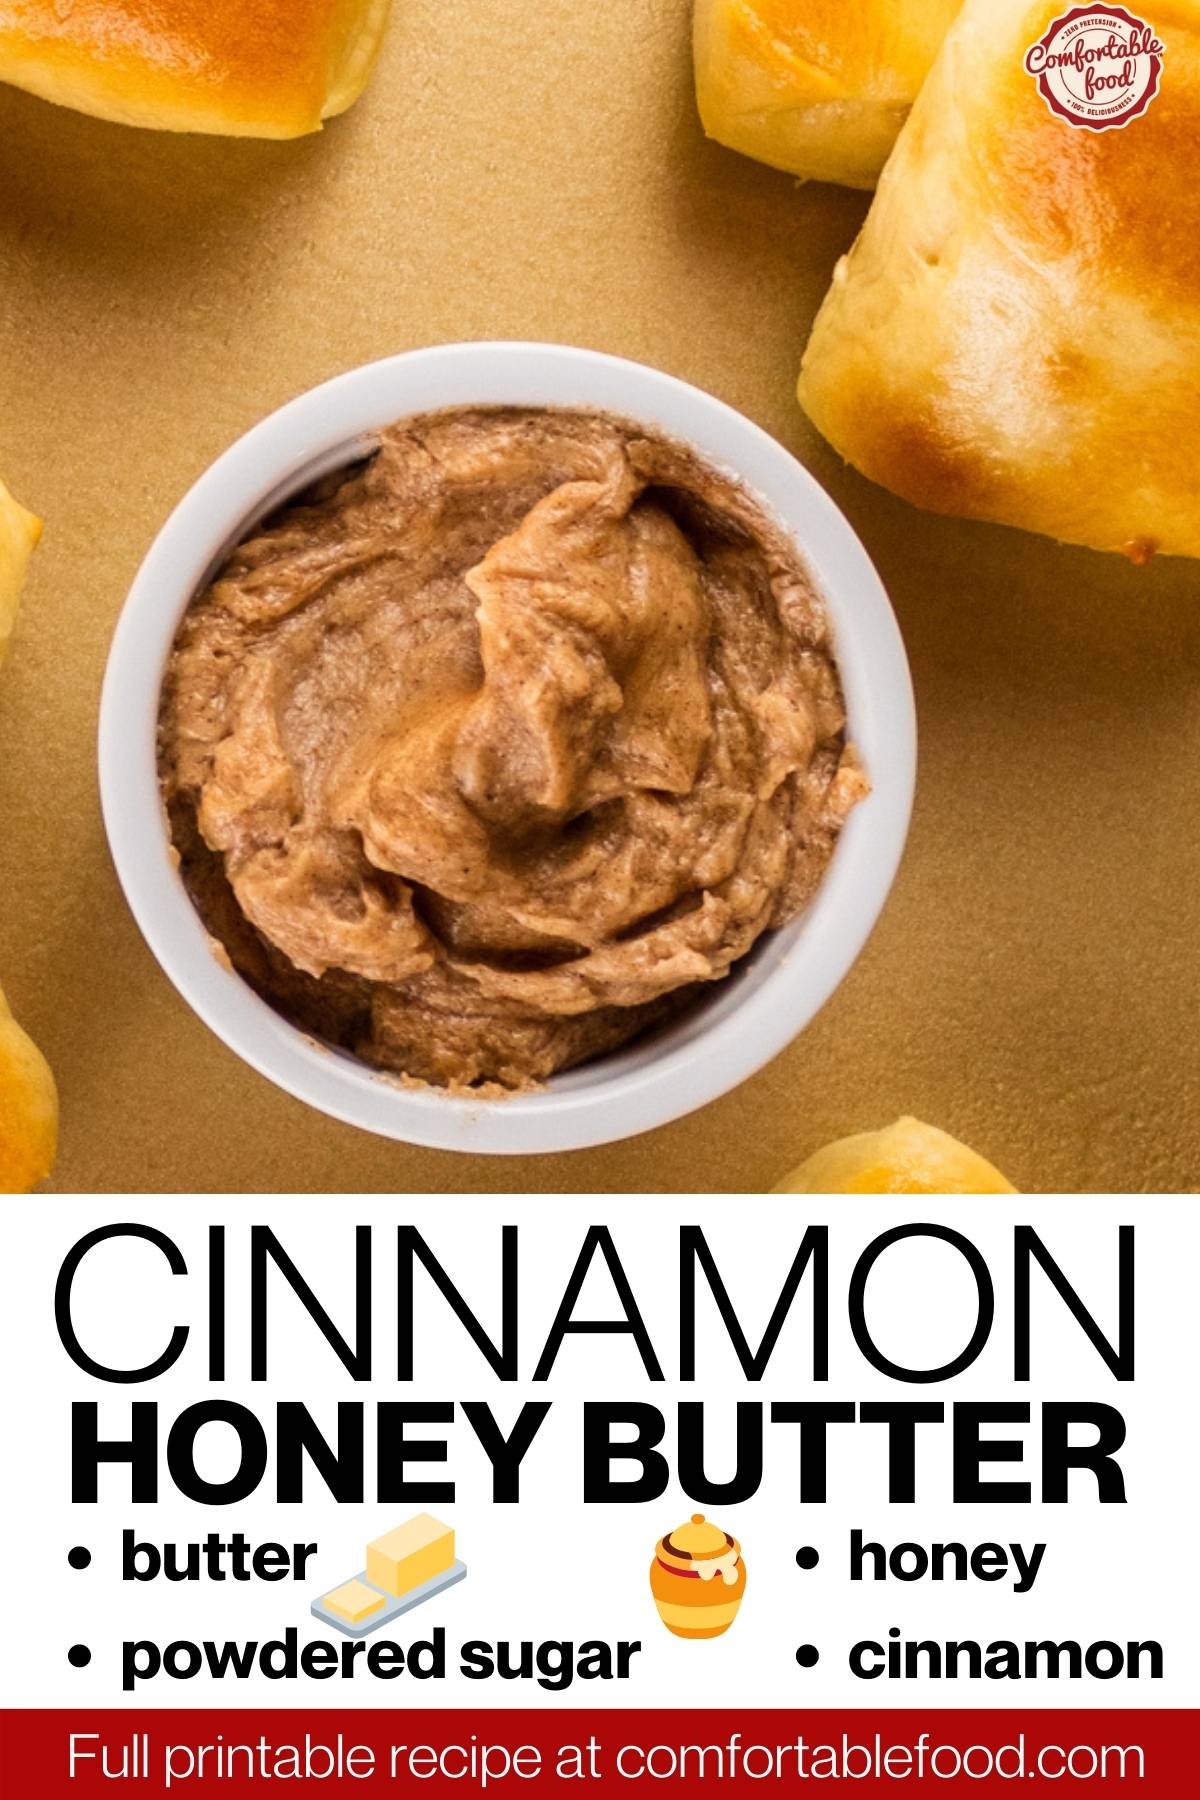 Cinnamon honey butter socials